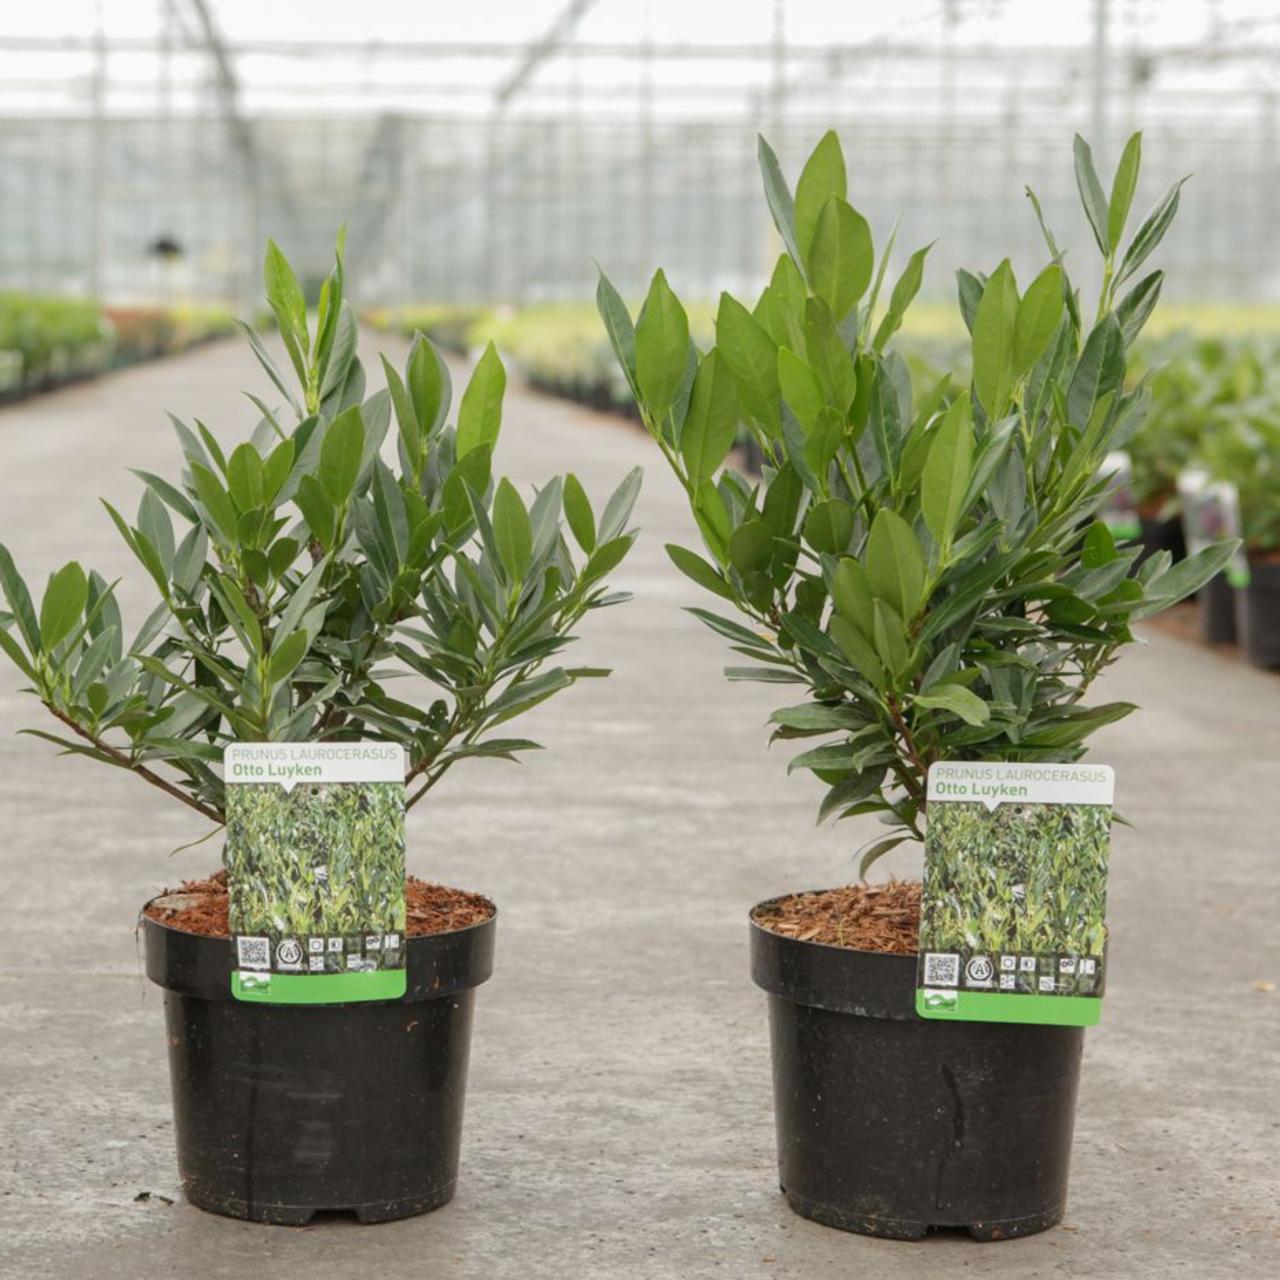 prunus laurocerasus 'otto luyken' - kaufen sie pflanzen bei coolplants